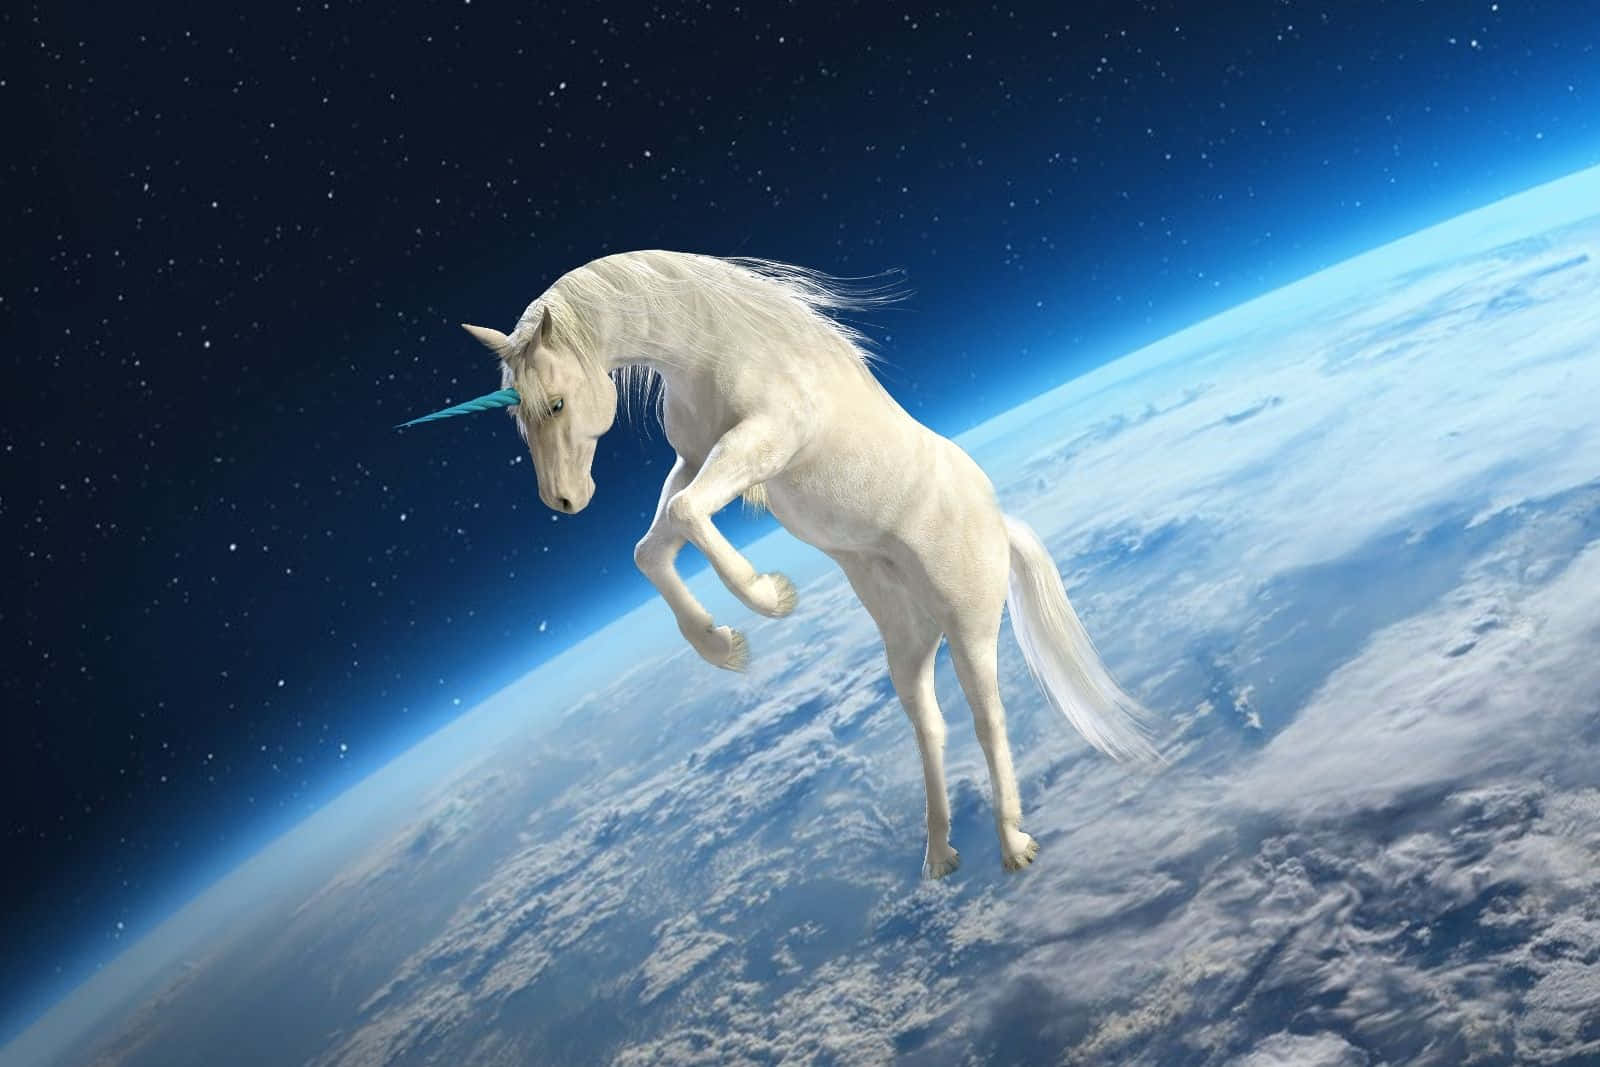 Imagende Un Unicornio En El Espacio Exterior